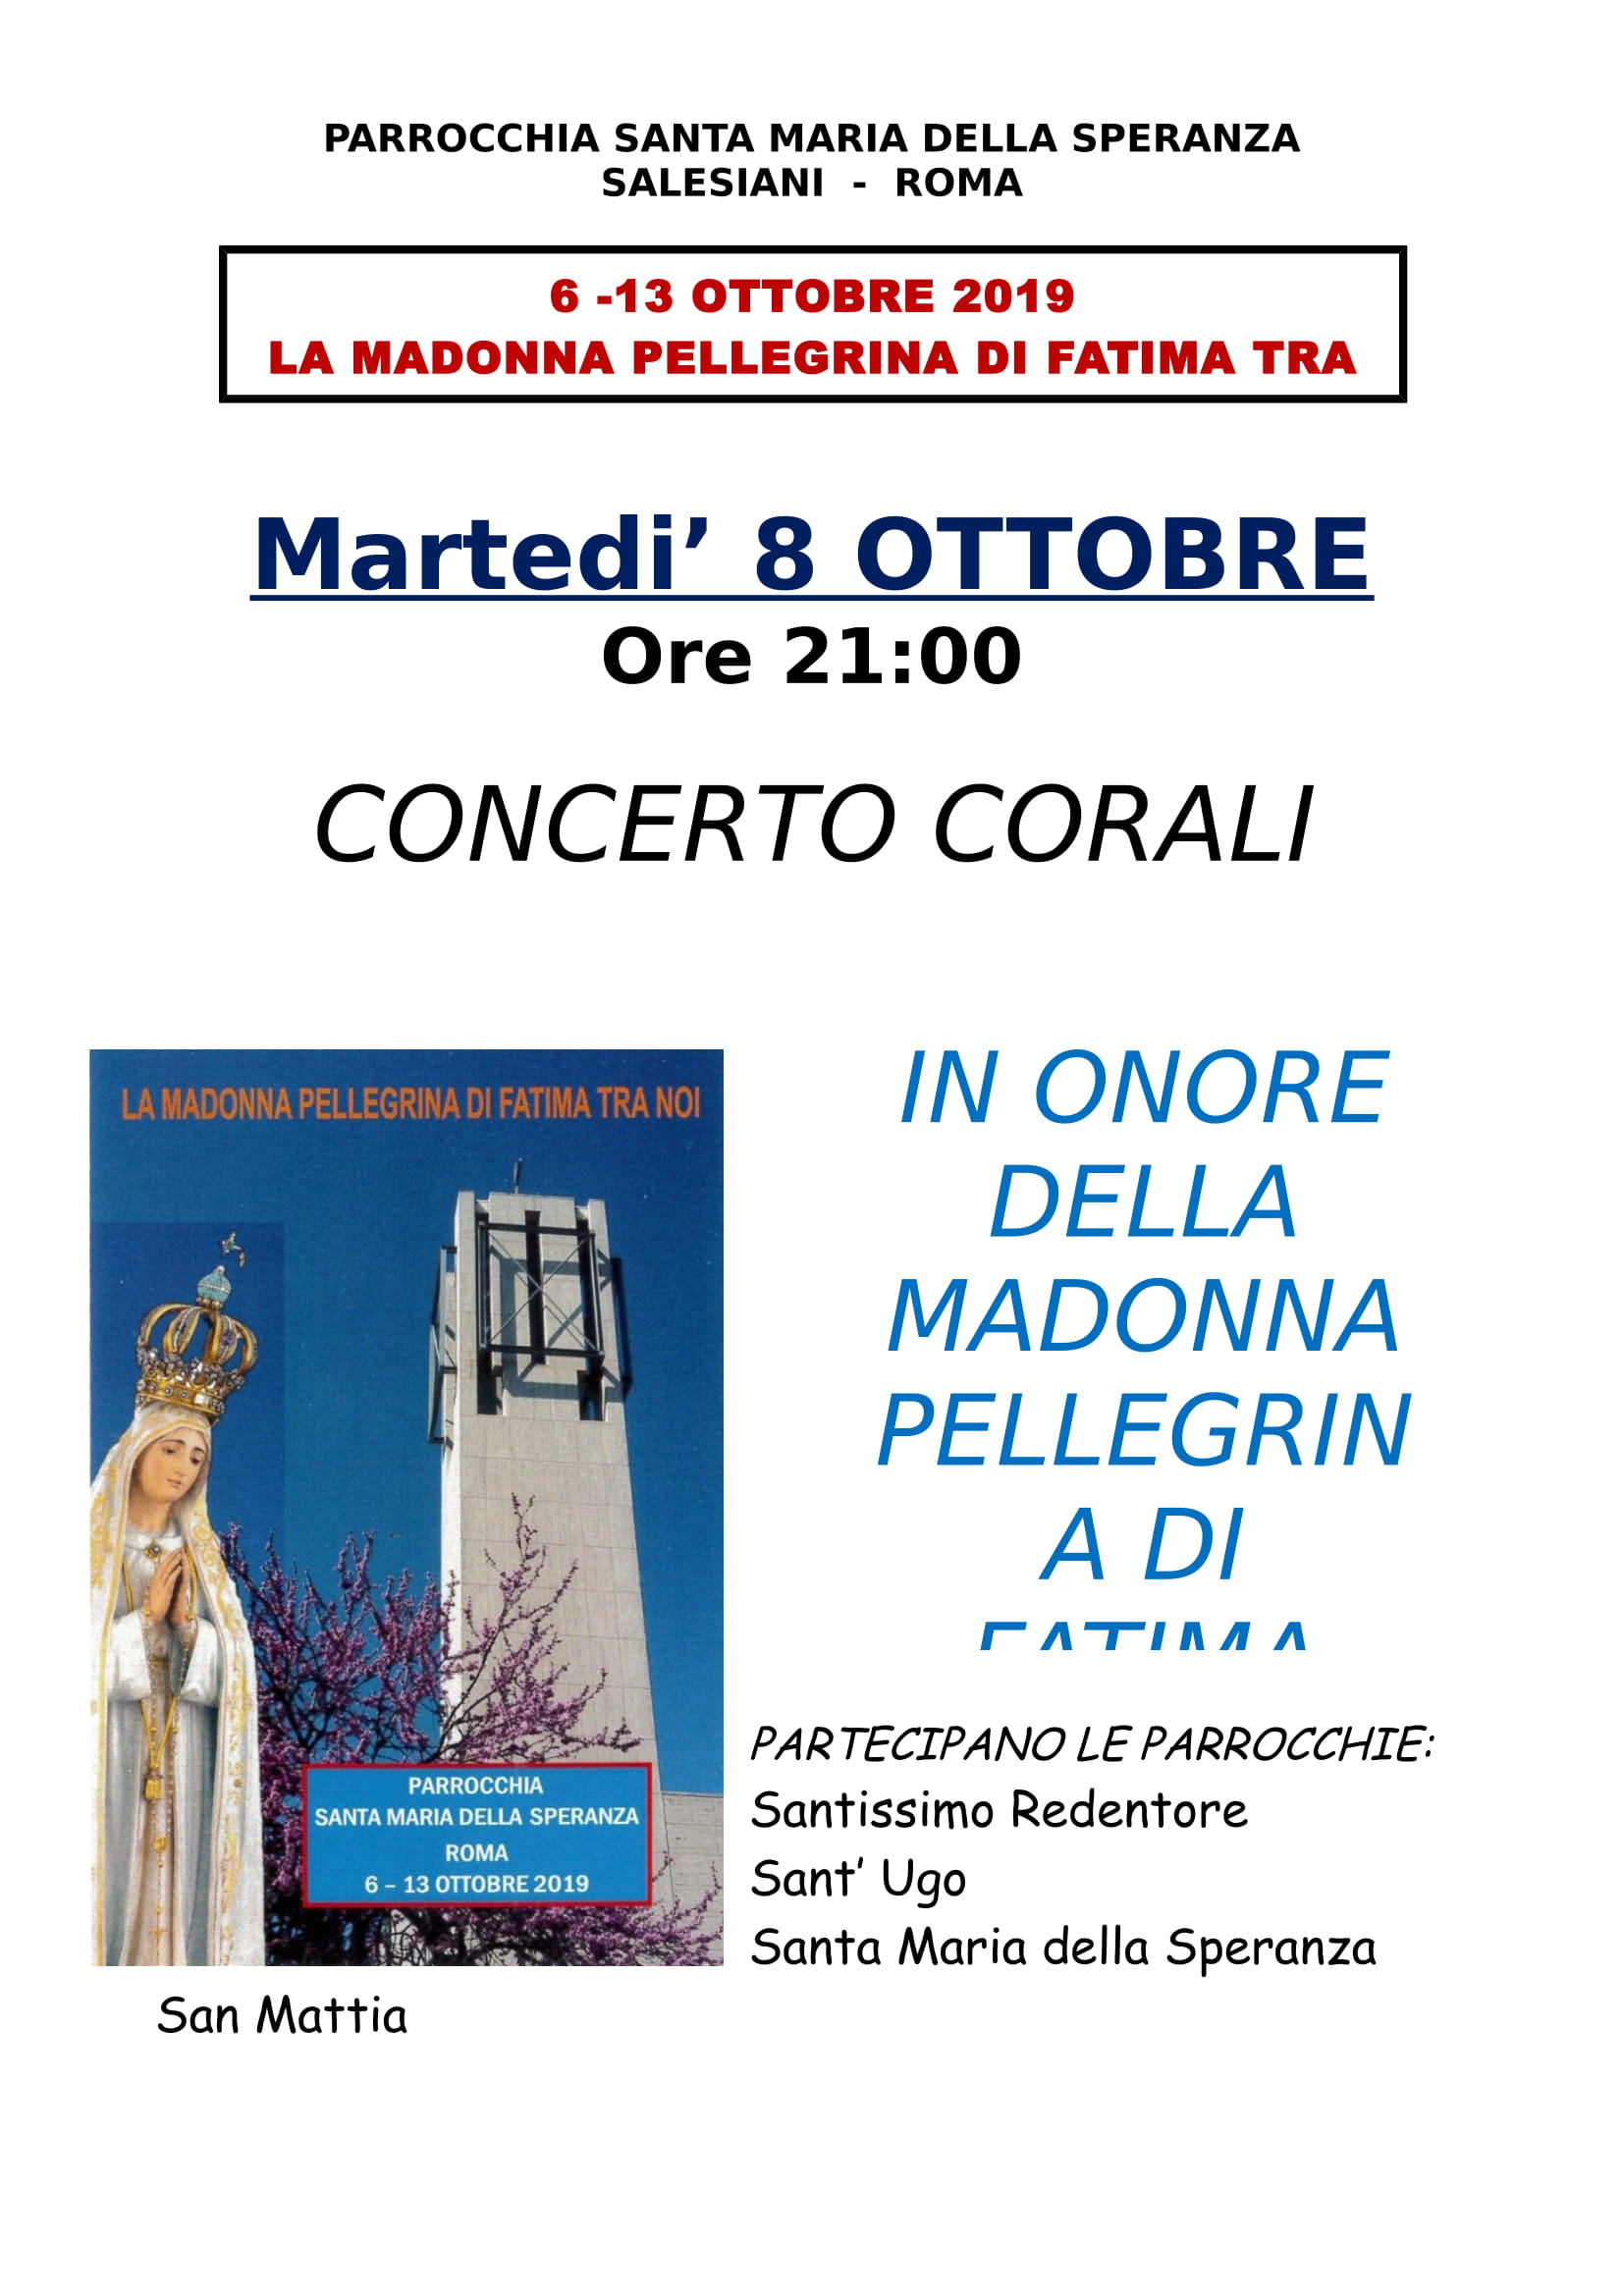 Concerto corali martedi 8 ottobre